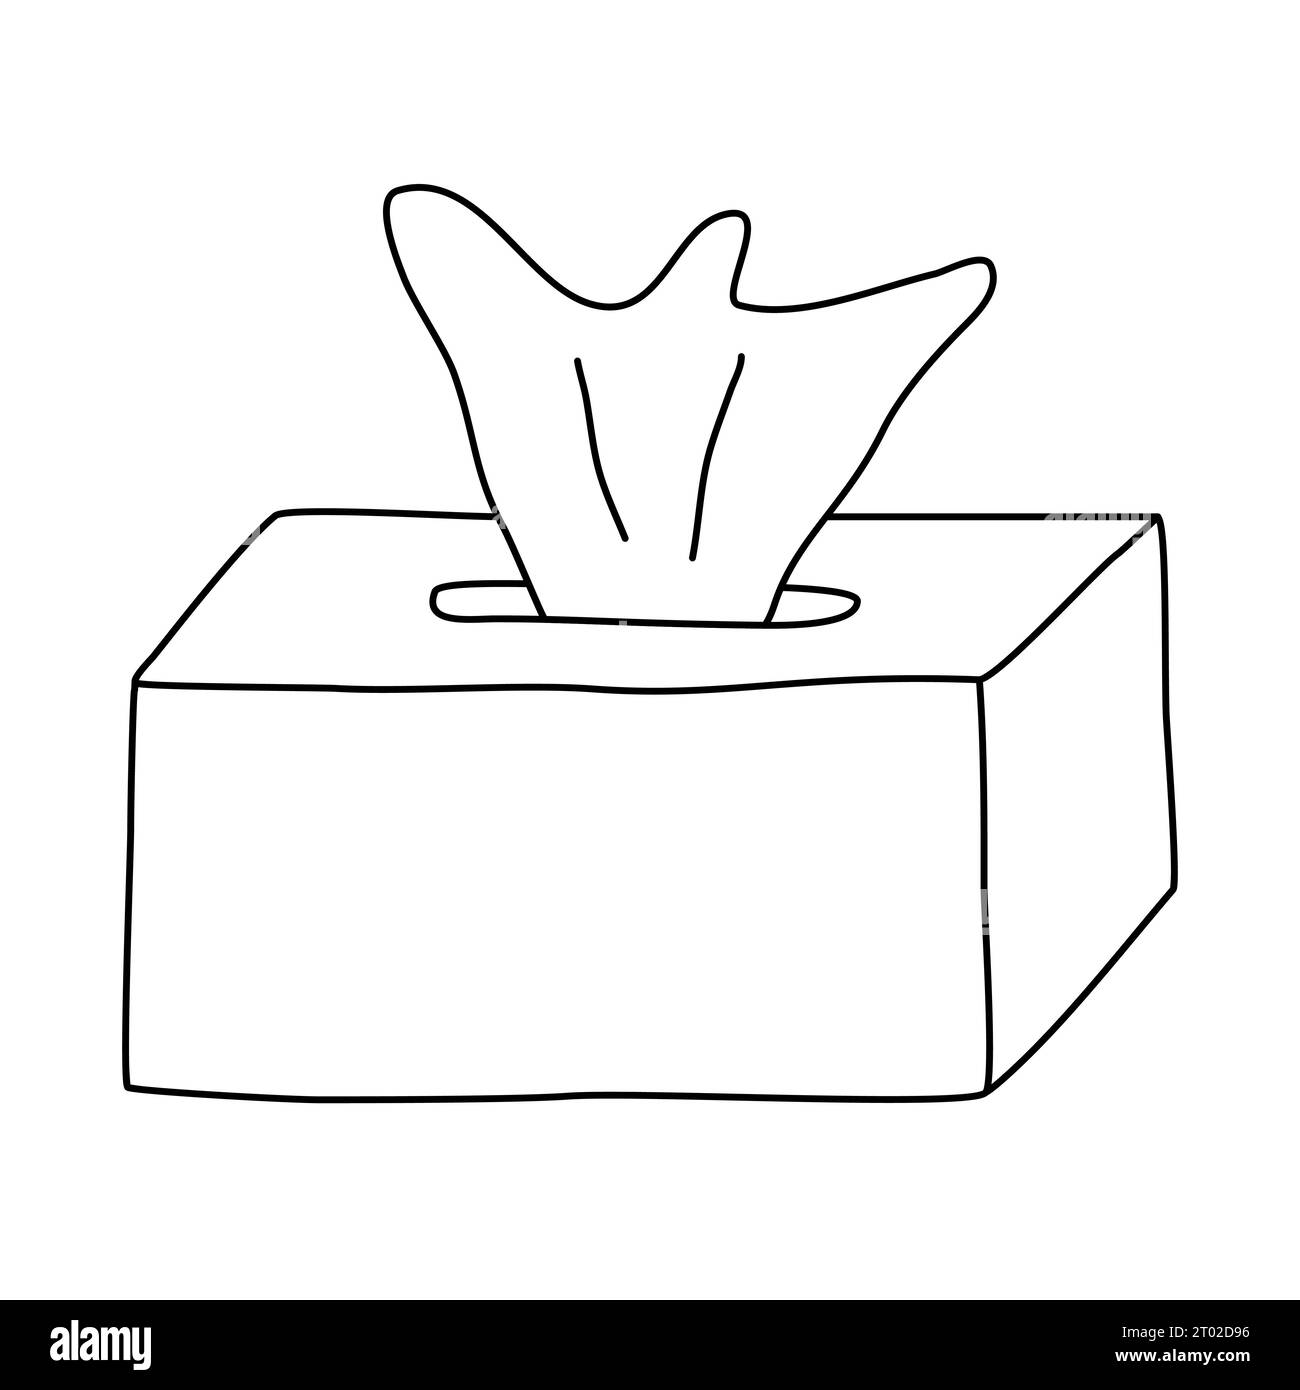 Box mit Papiertaschentuch, Servietten oder nassen Tüchern, Doodle-Stil flache Vektor-Umrissillustration für Kinder Malbuch Stock Vektor